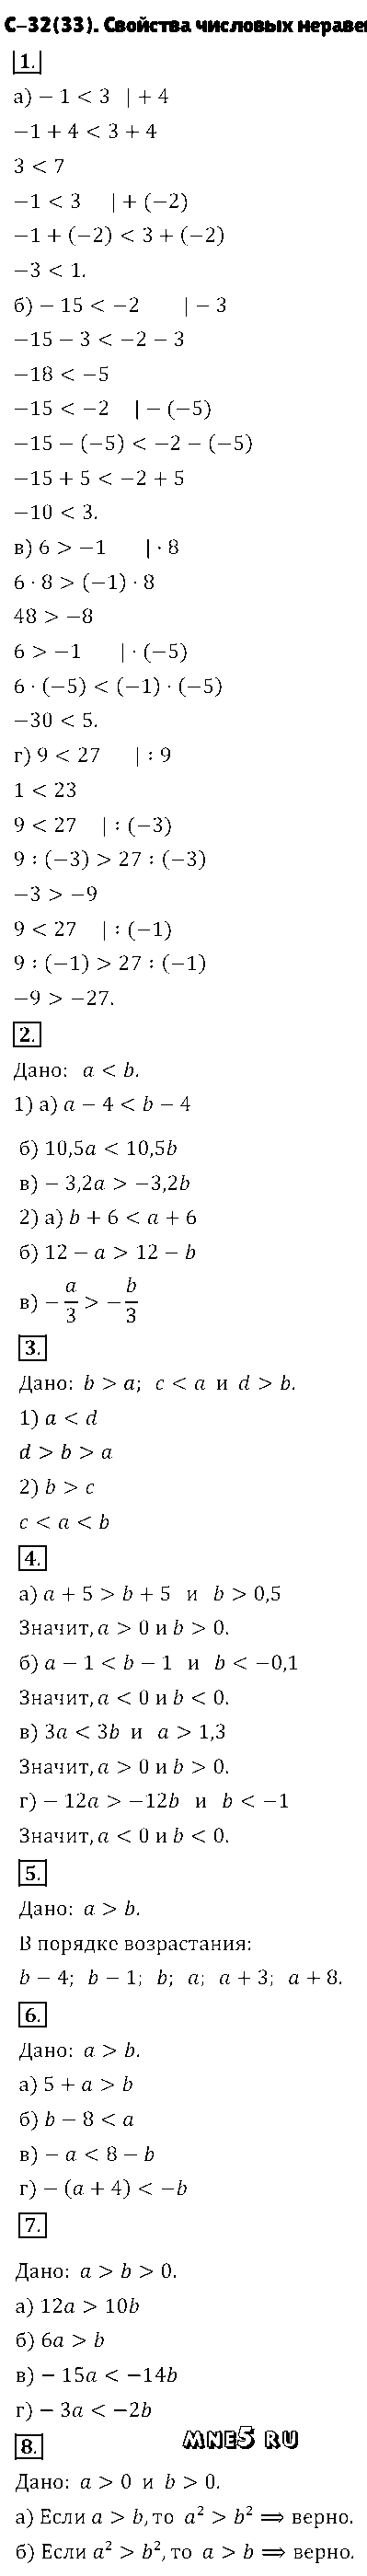 ГДЗ Алгебра 8 класс - С-32(33). Свойства числовых неравенств